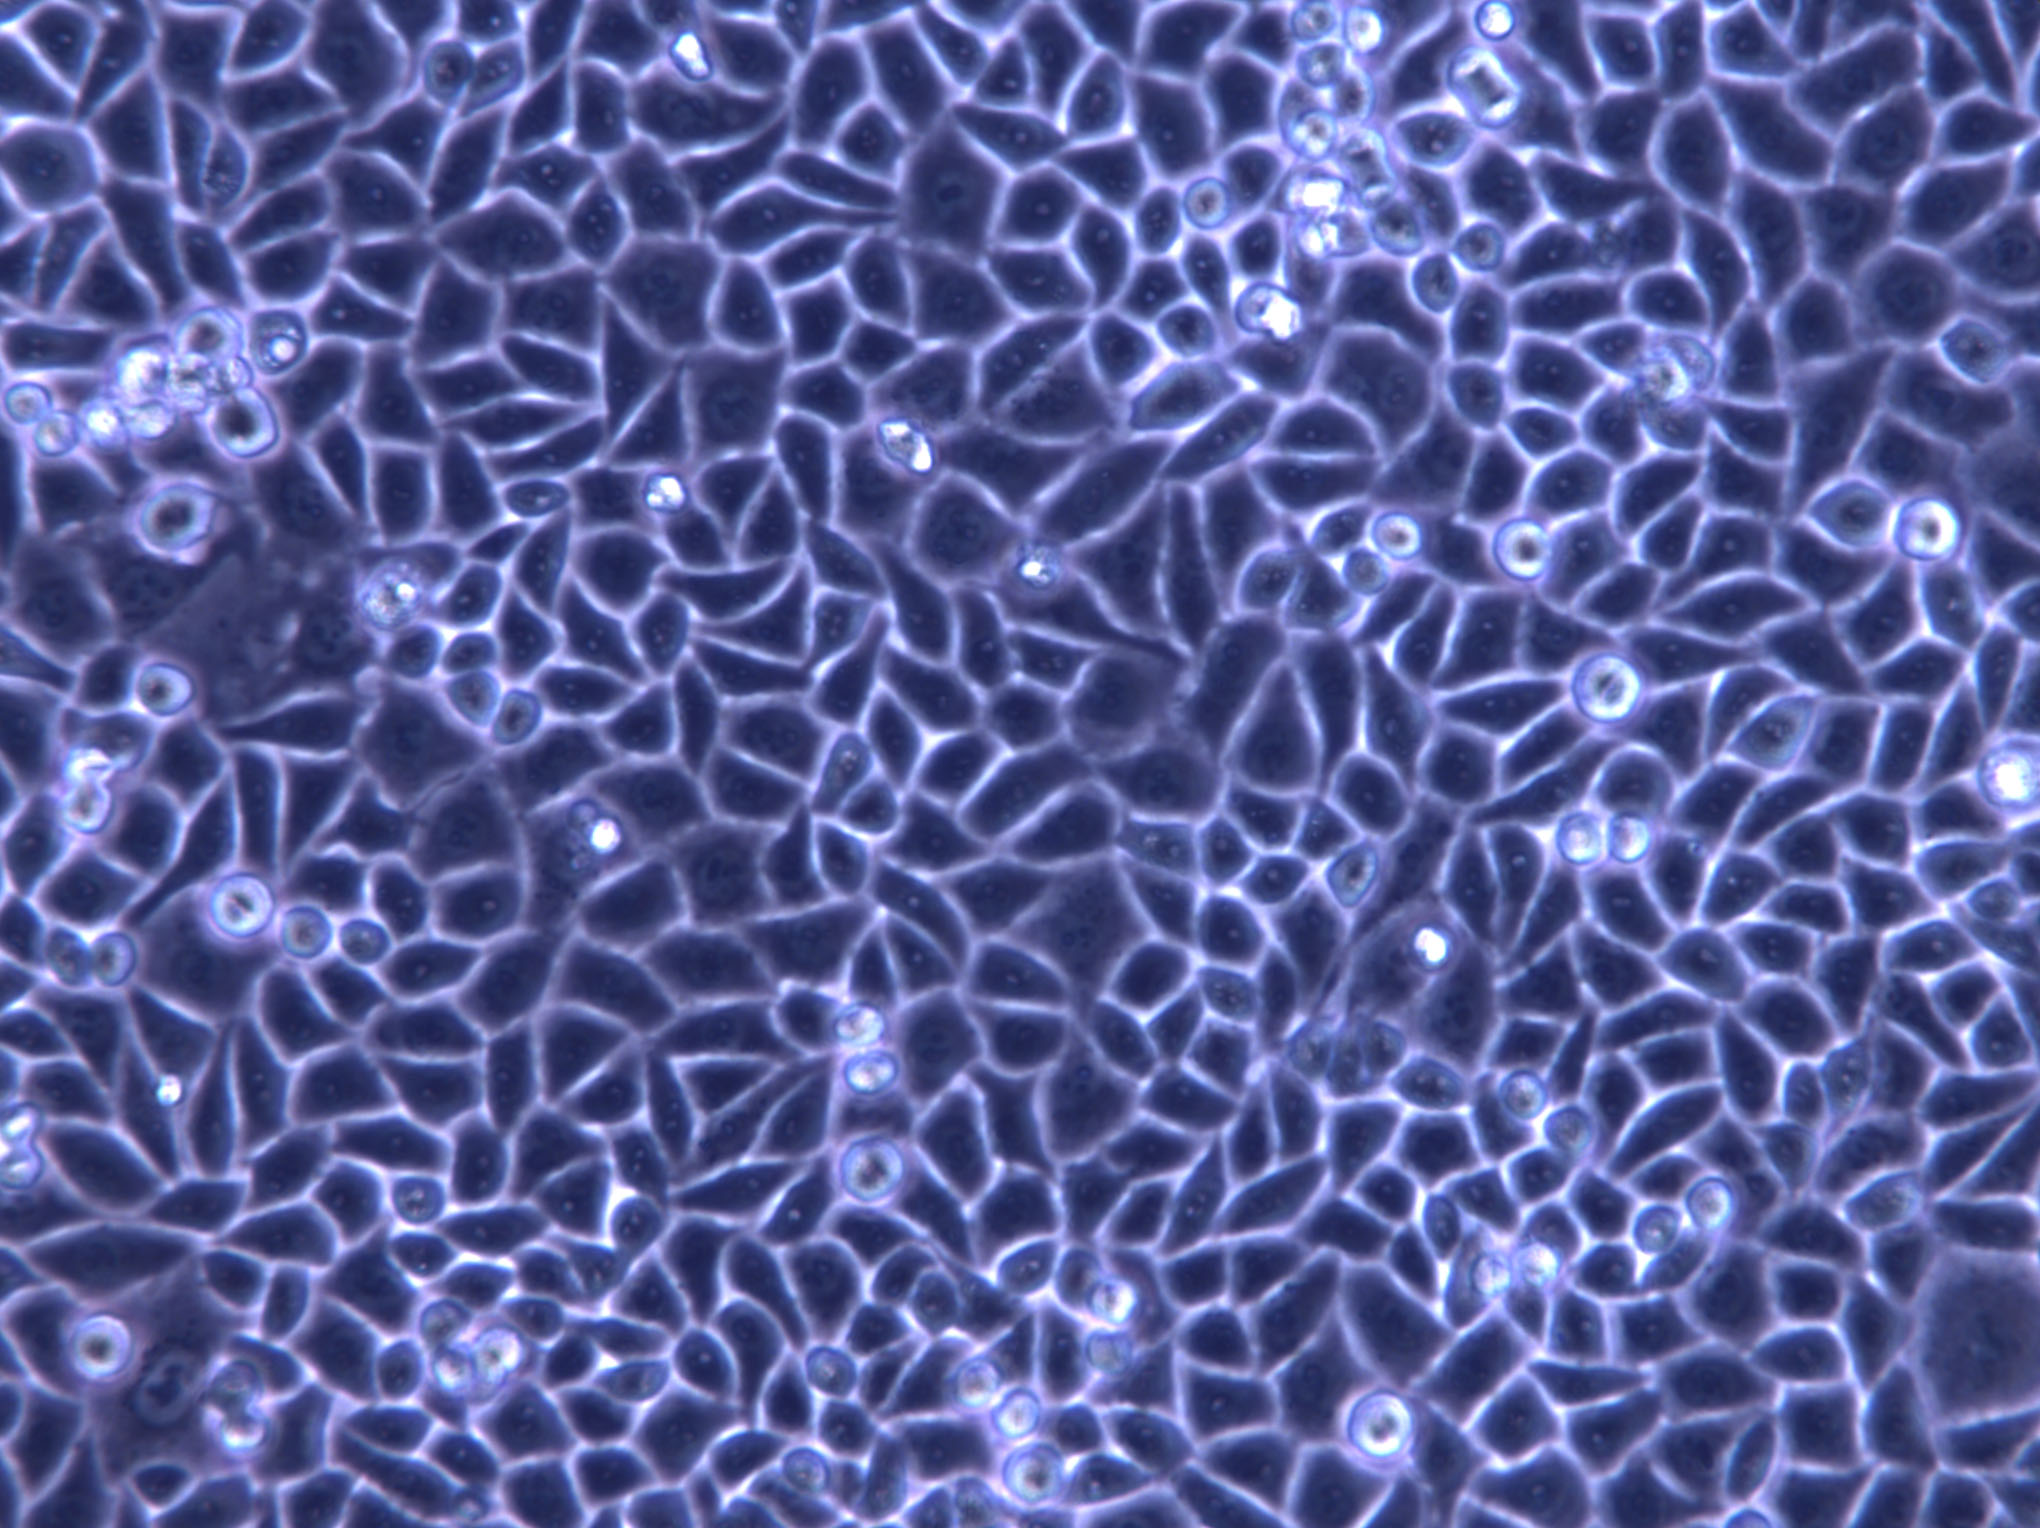 QG-56 Cell|人肺扁平上皮癌细胞,QG-56 Cell